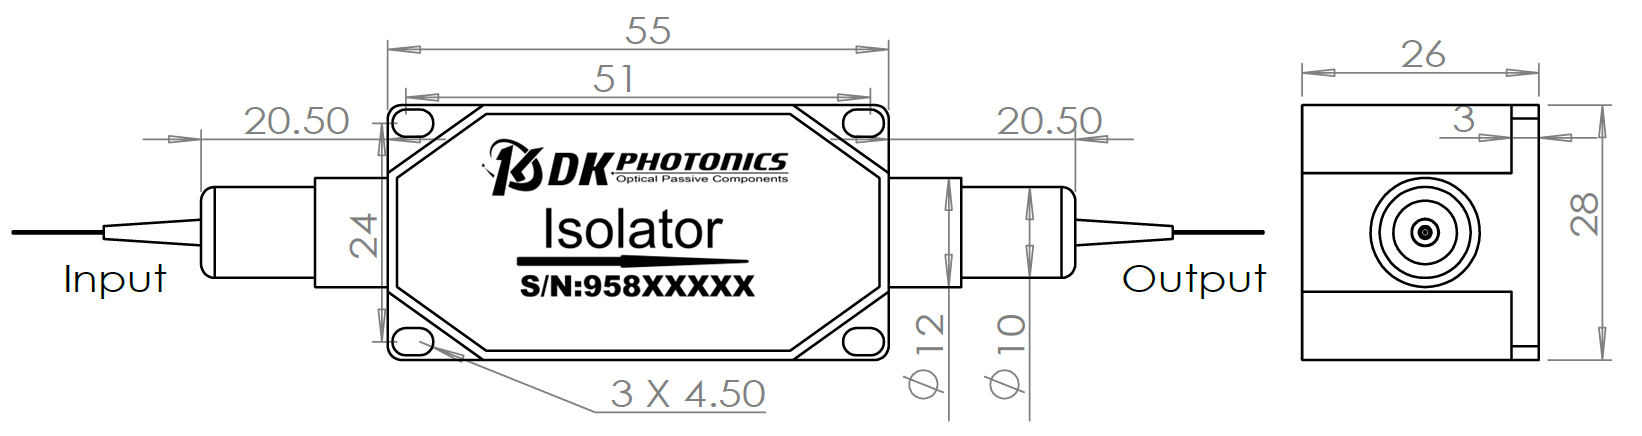 808nm TGG Based PM Optical Isolator